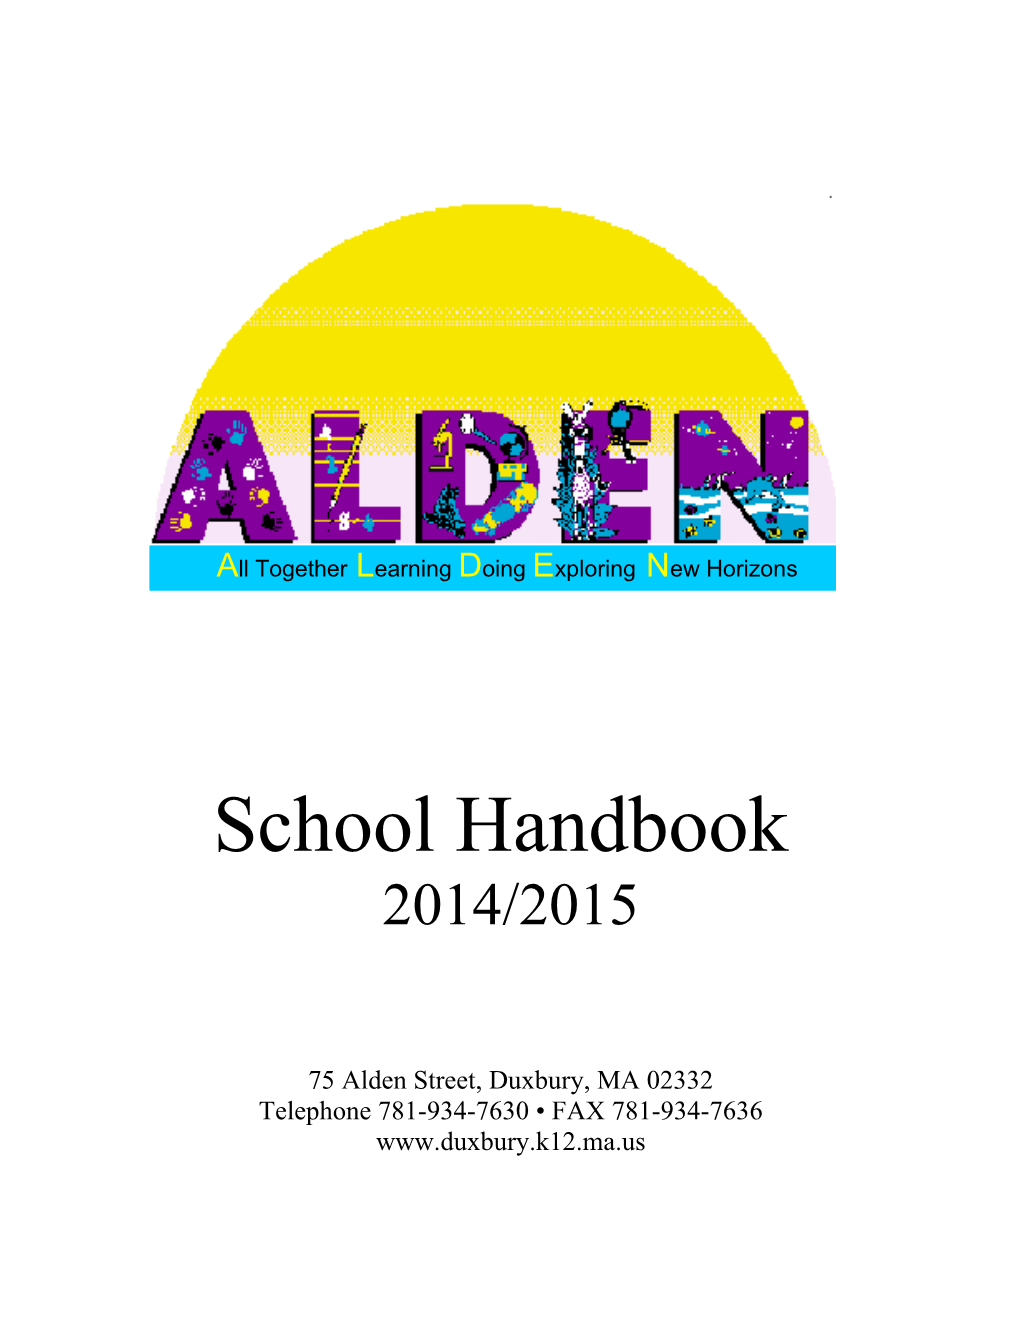 Alden School Mission Statement